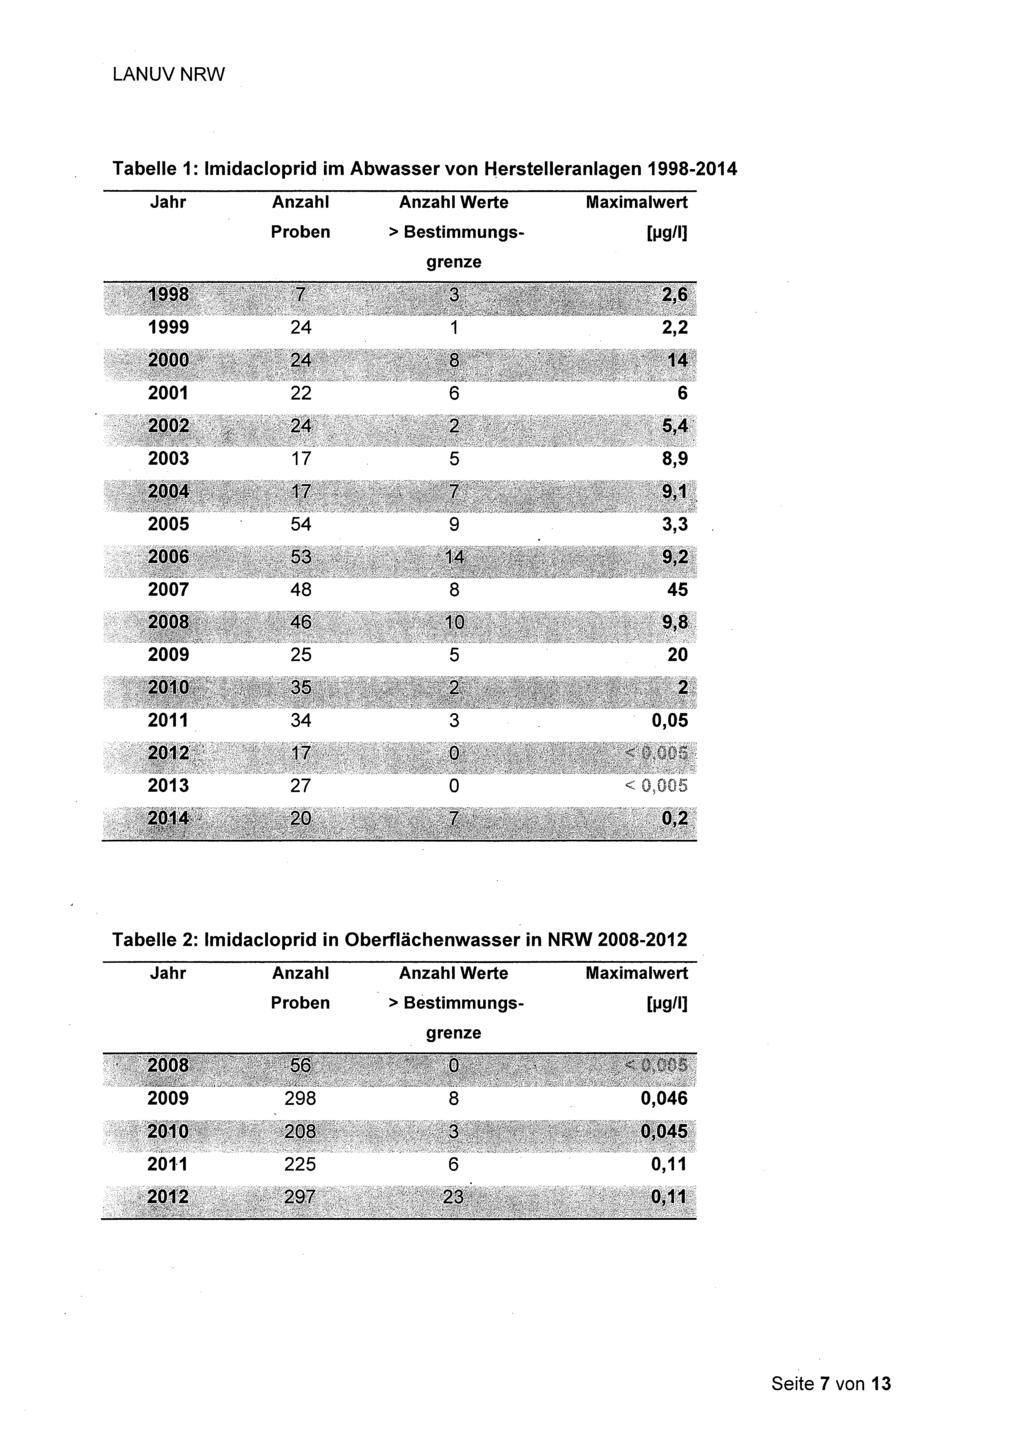 Tabelle 1: Imidacloprid im Abwasser von Herstelleranlagen 1998-2014 Jahr Anzahl Anzahl Werte Maximalwert Proben > Bestimmungs- [ljg/l] grenze 1999 24 1 2,2 2001 22 6 6 2003 17 5 8,9 2005 54 9 3,3